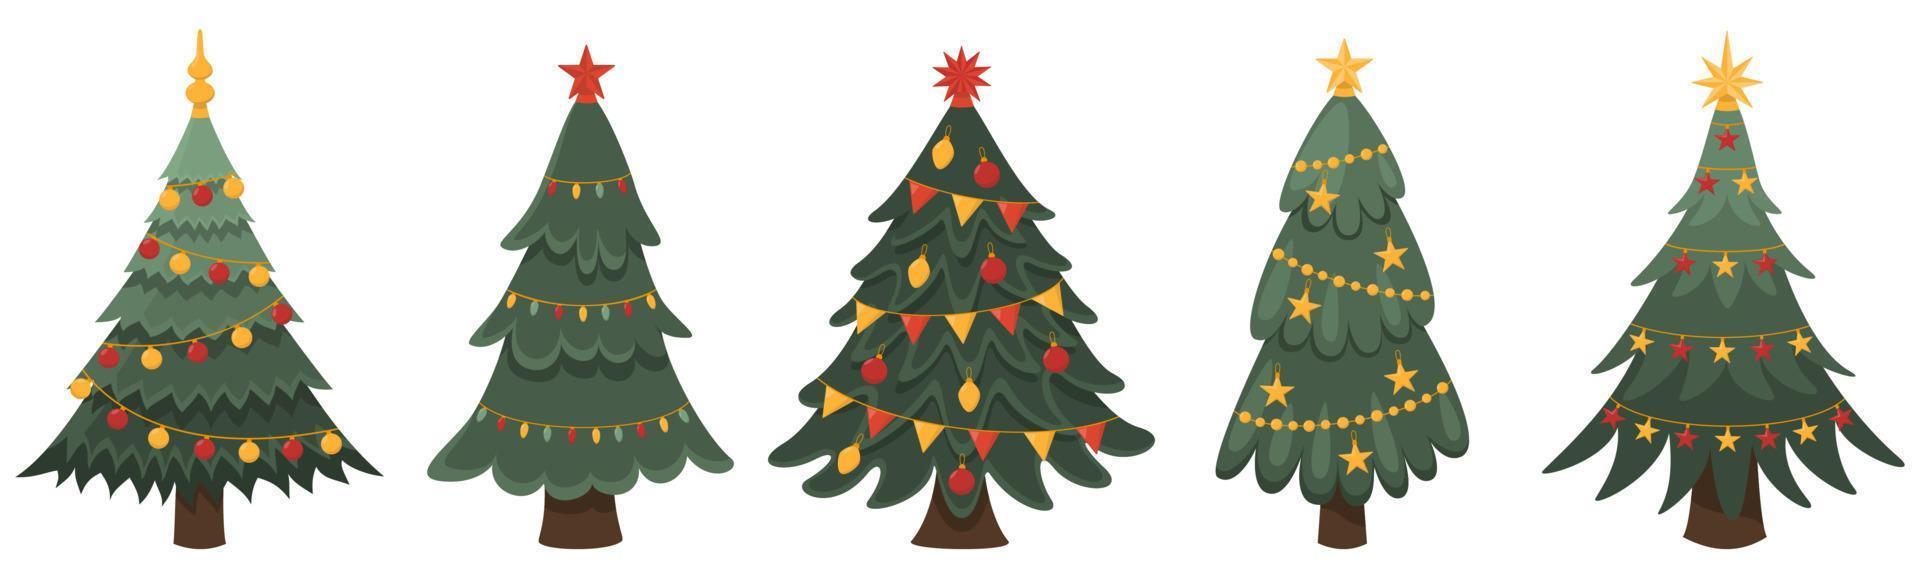 coleção de árvores de natal decoradas, ano novo e natal. ilustração vetorial vetor